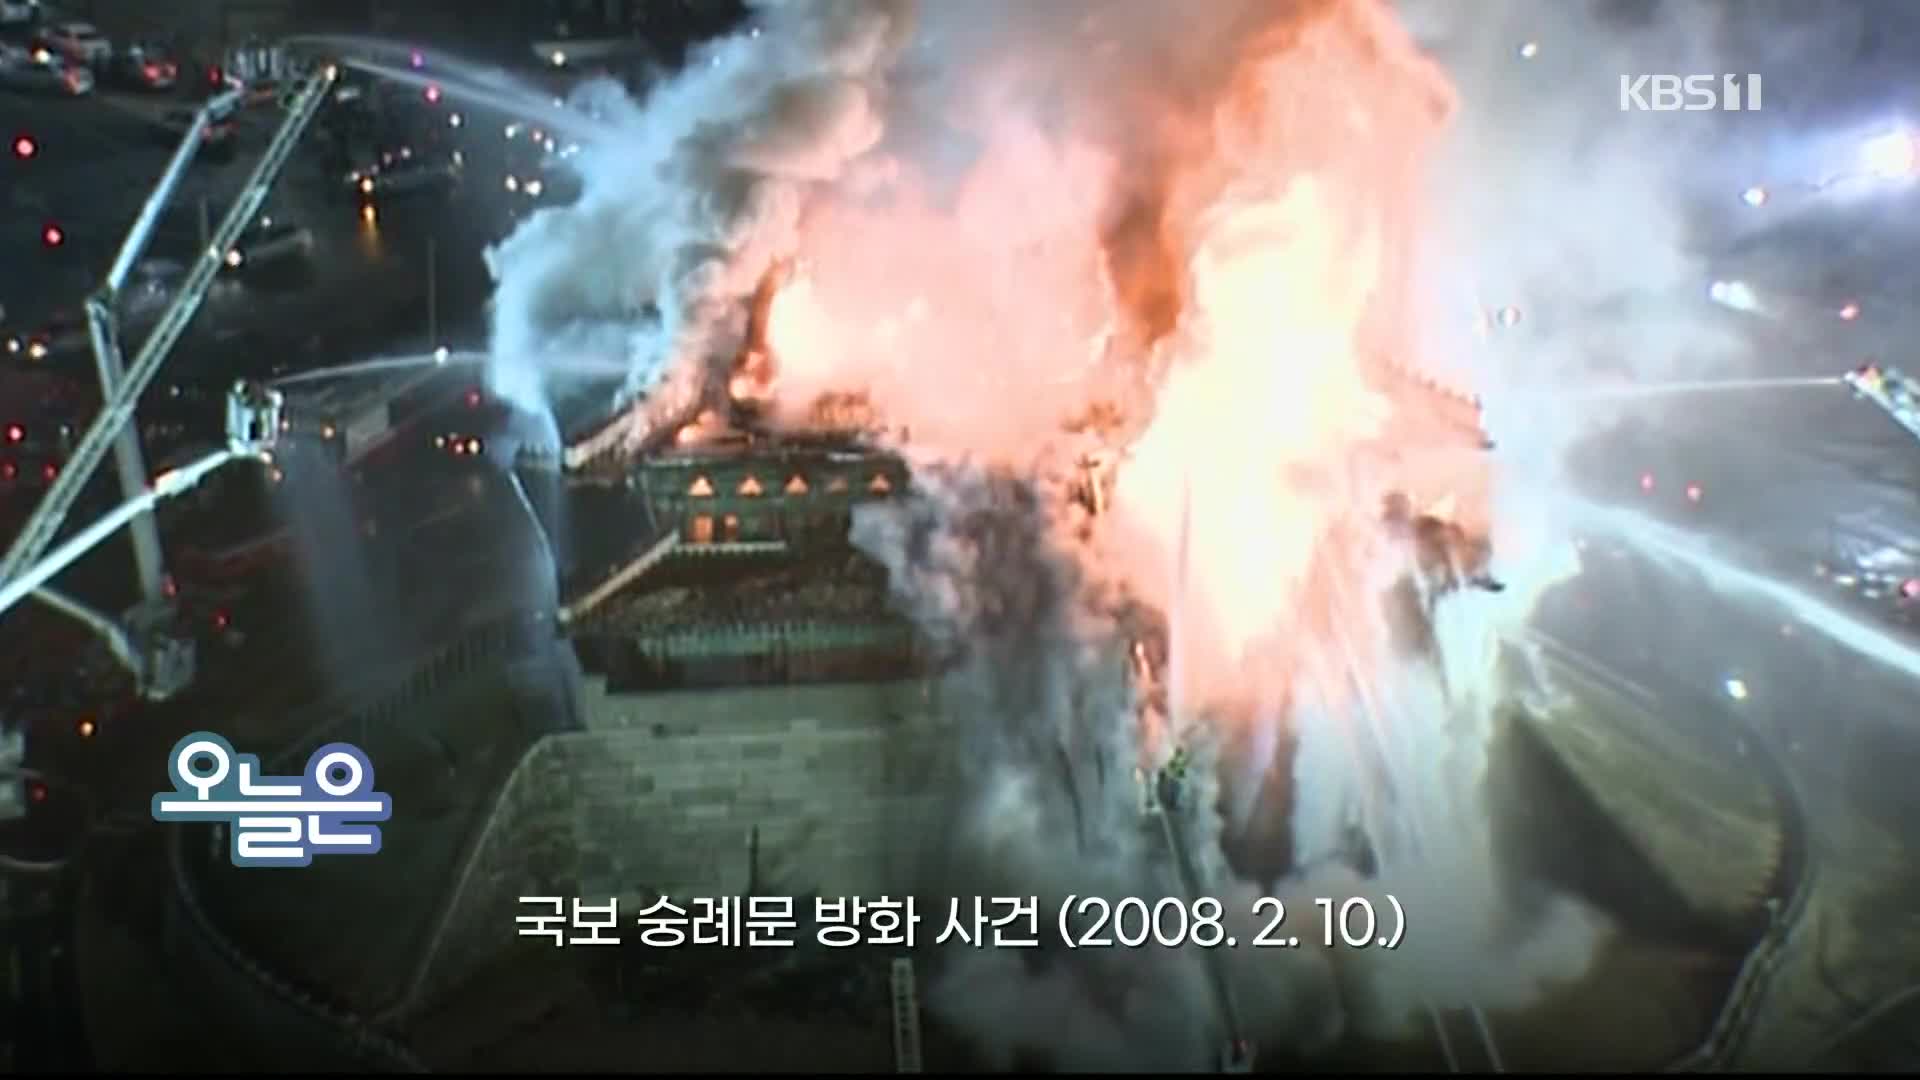 [오늘은] 국보 숭례문 방화 사건(2008. 2. 10.)